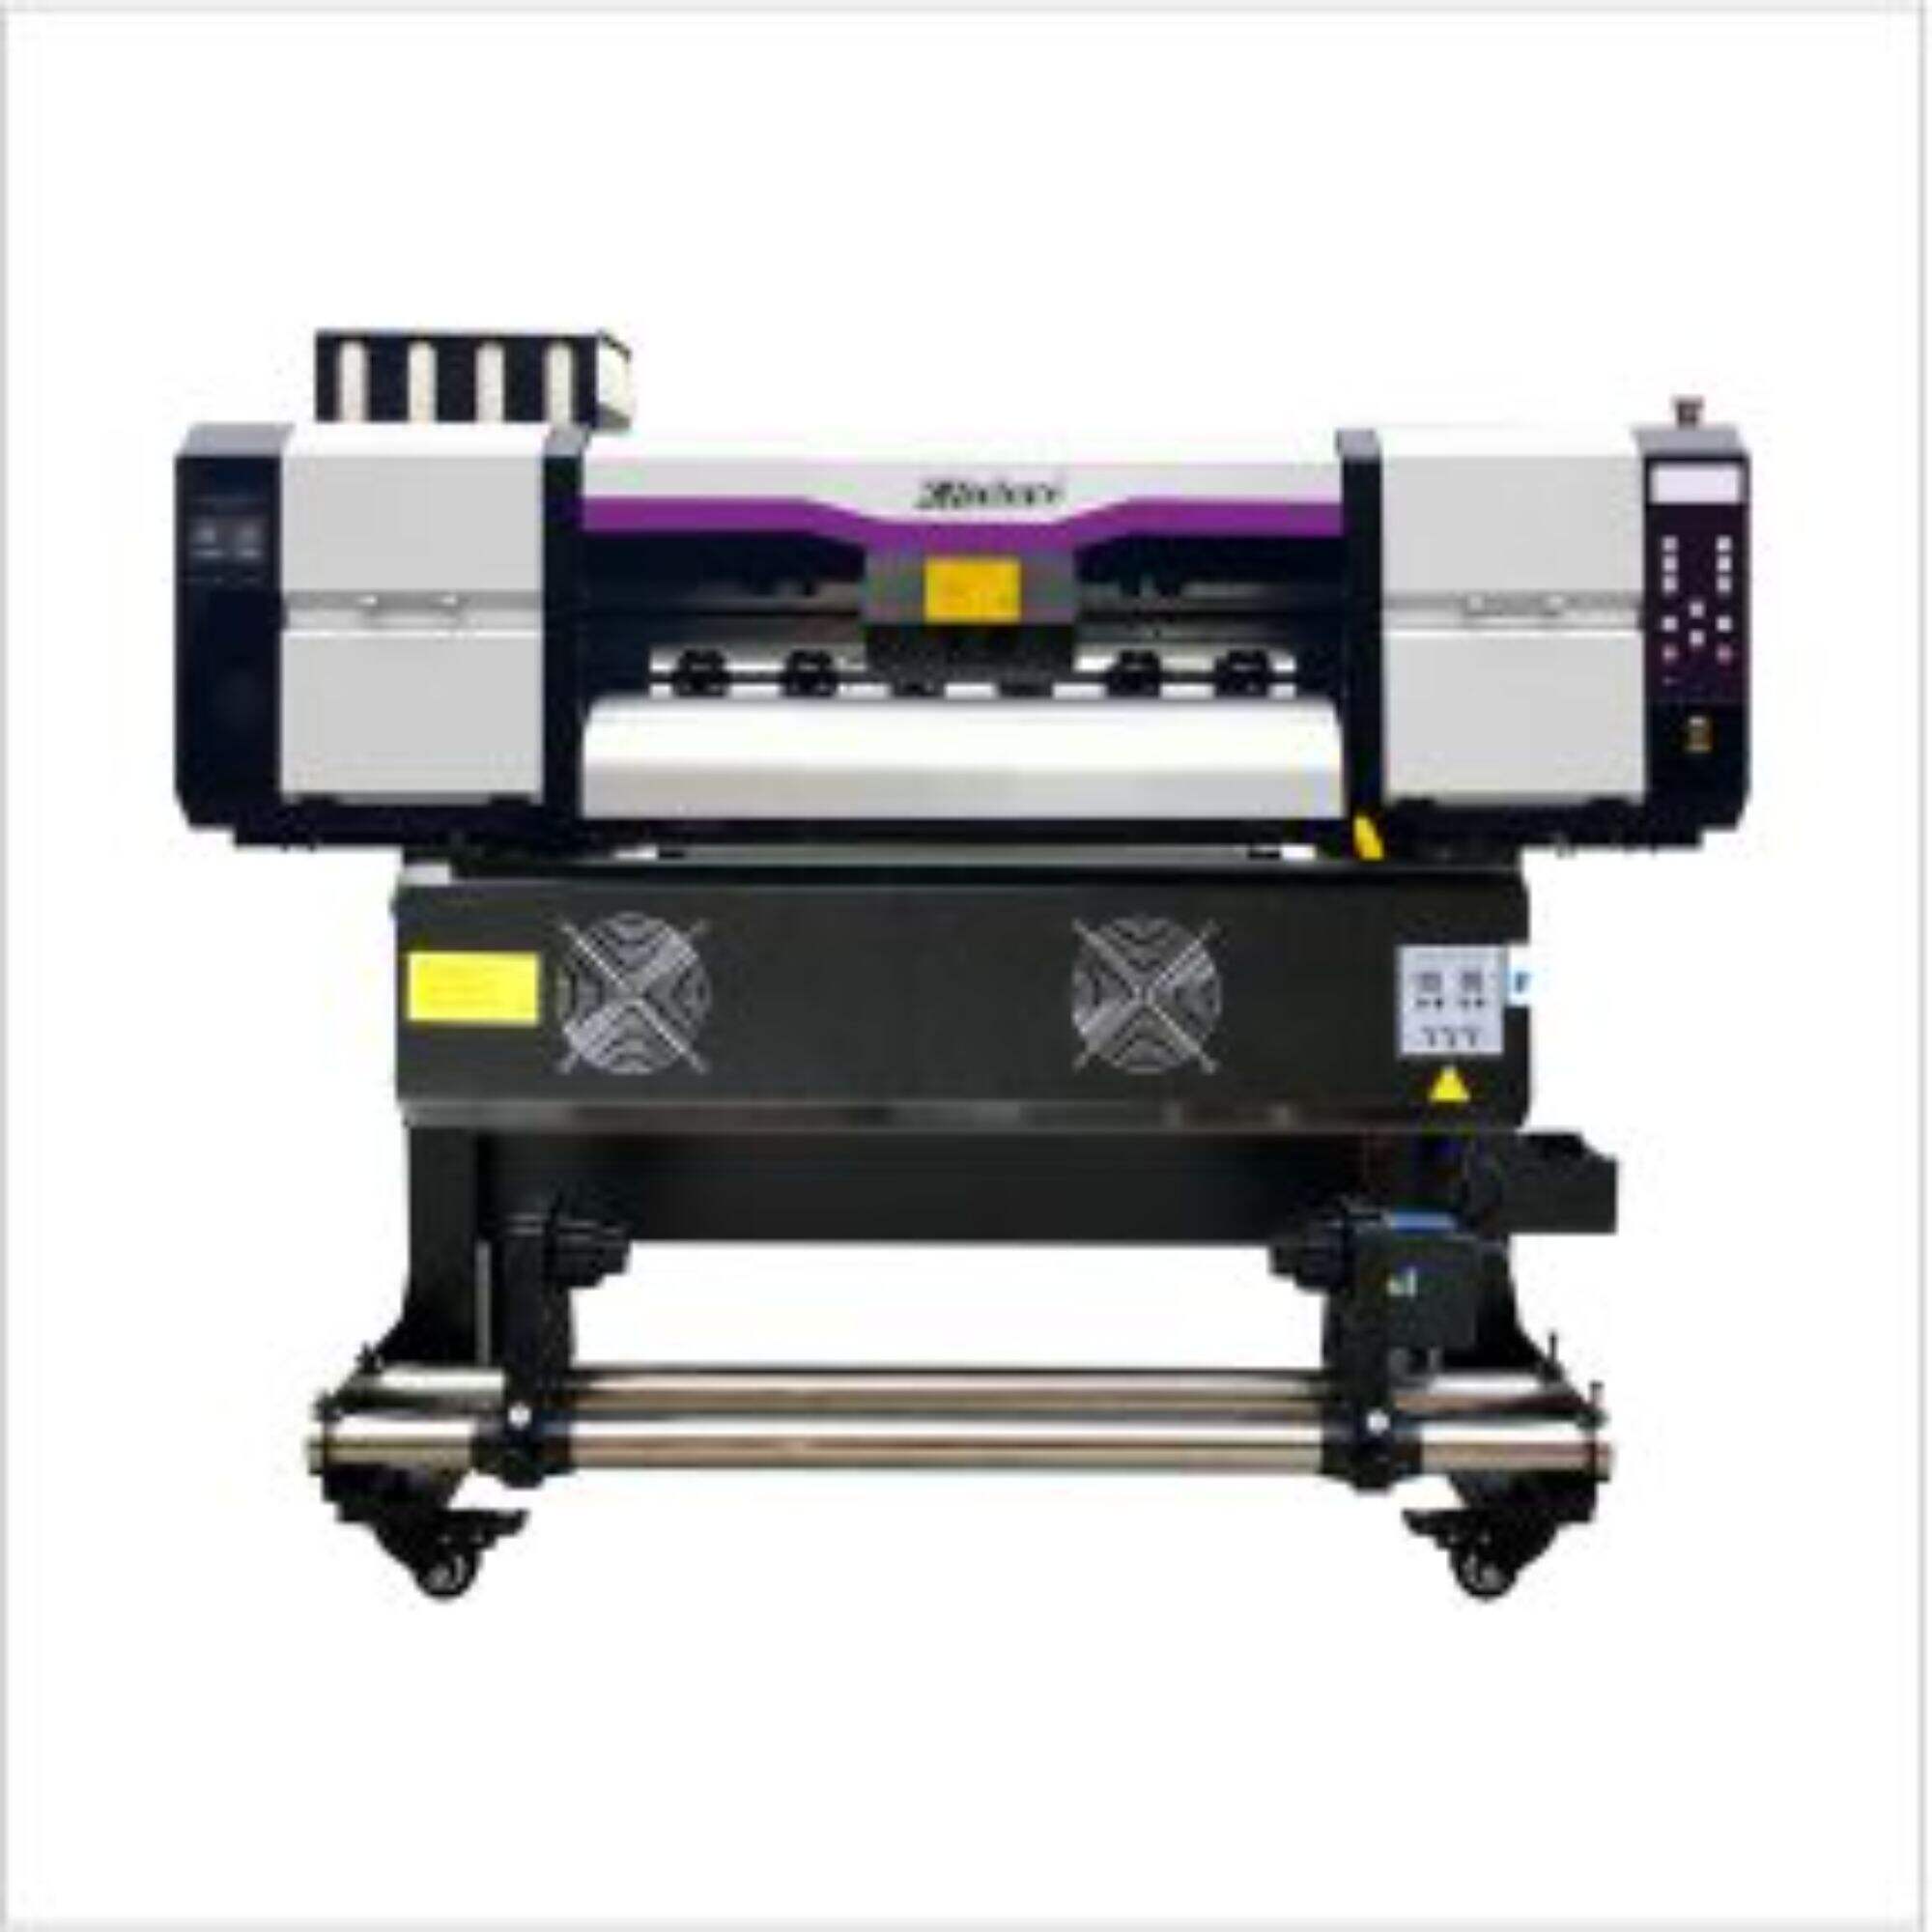 XL-650WX Indoor/outdoor printer